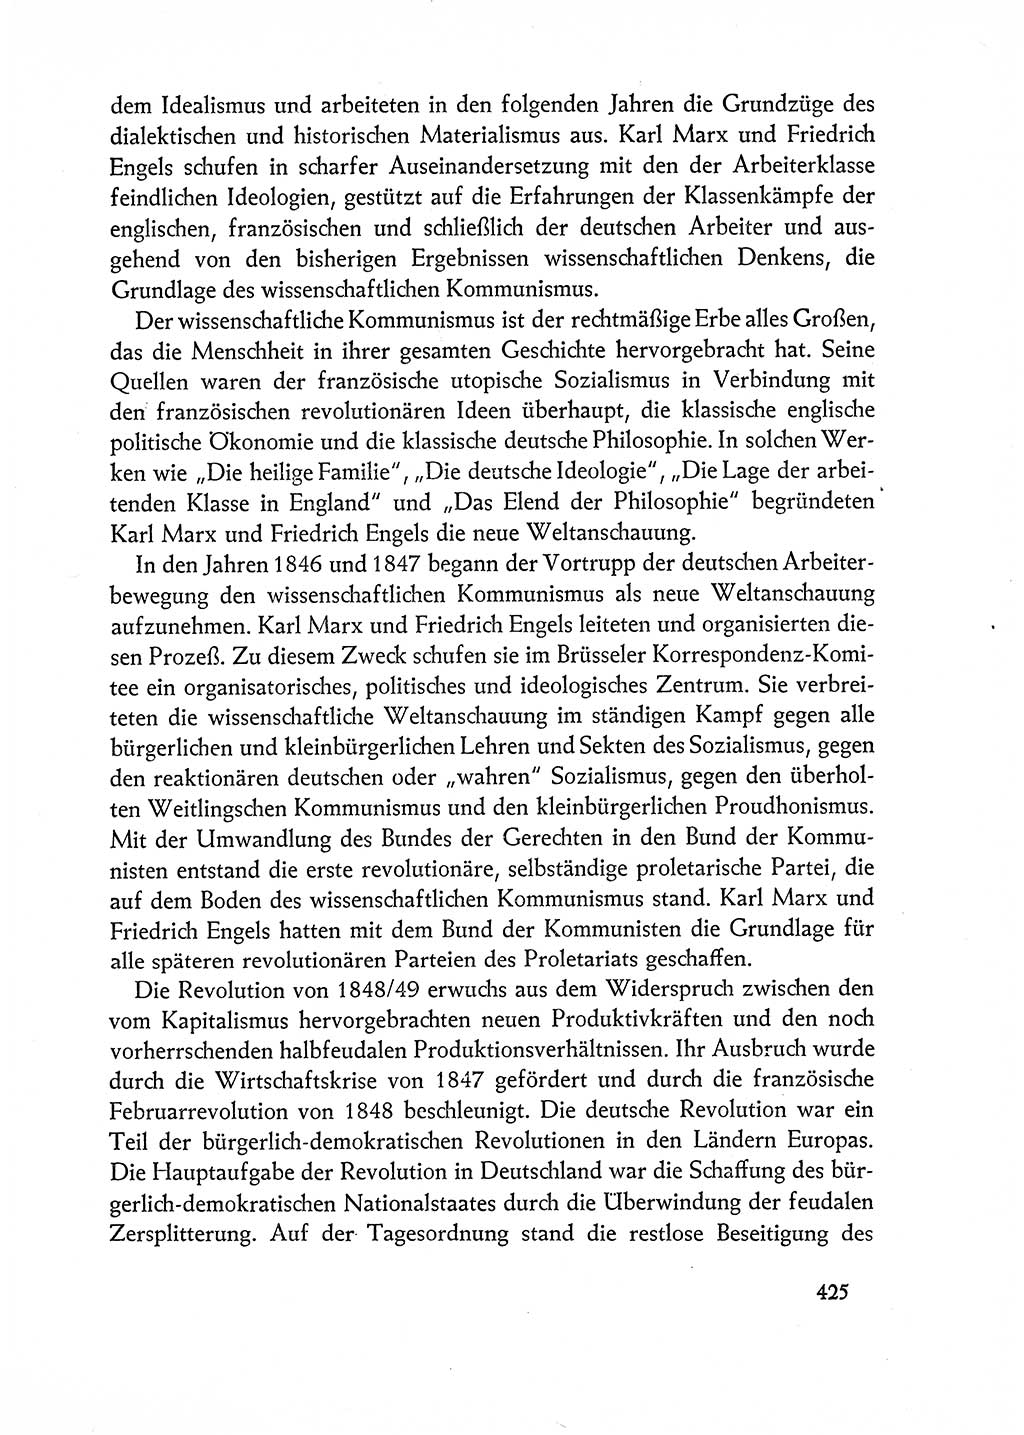 Dokumente der Sozialistischen Einheitspartei Deutschlands (SED) [Deutsche Demokratische Republik (DDR)] 1962-1963, Seite 425 (Dok. SED DDR 1962-1963, S. 425)